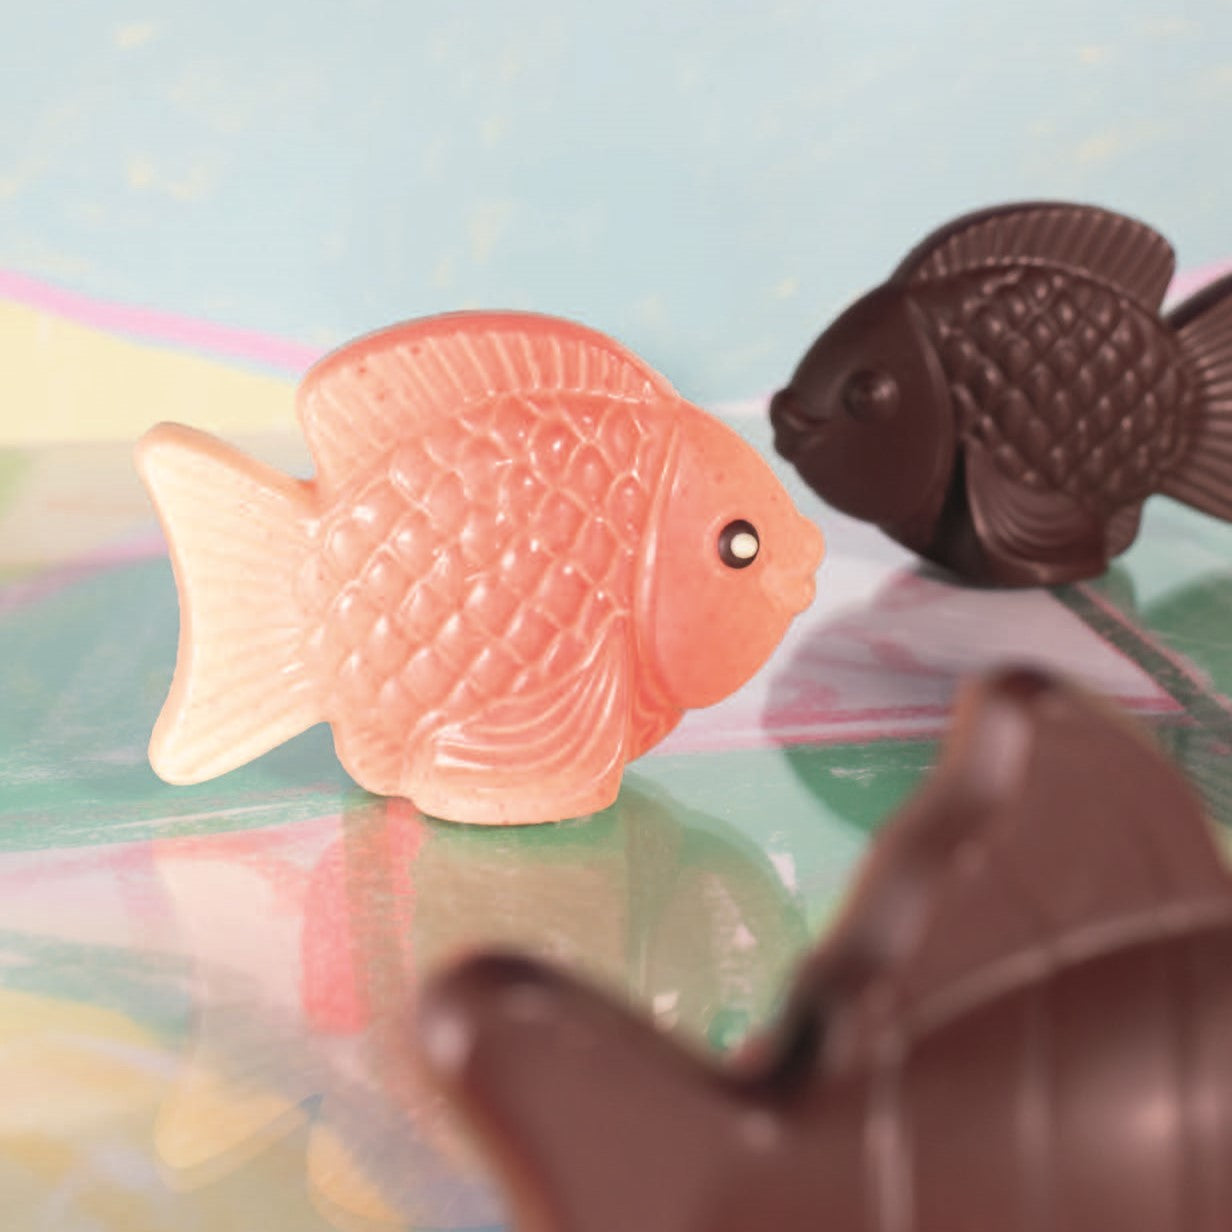 Guido Gobino Chocolate Fish Dark 63% (Seasonal)